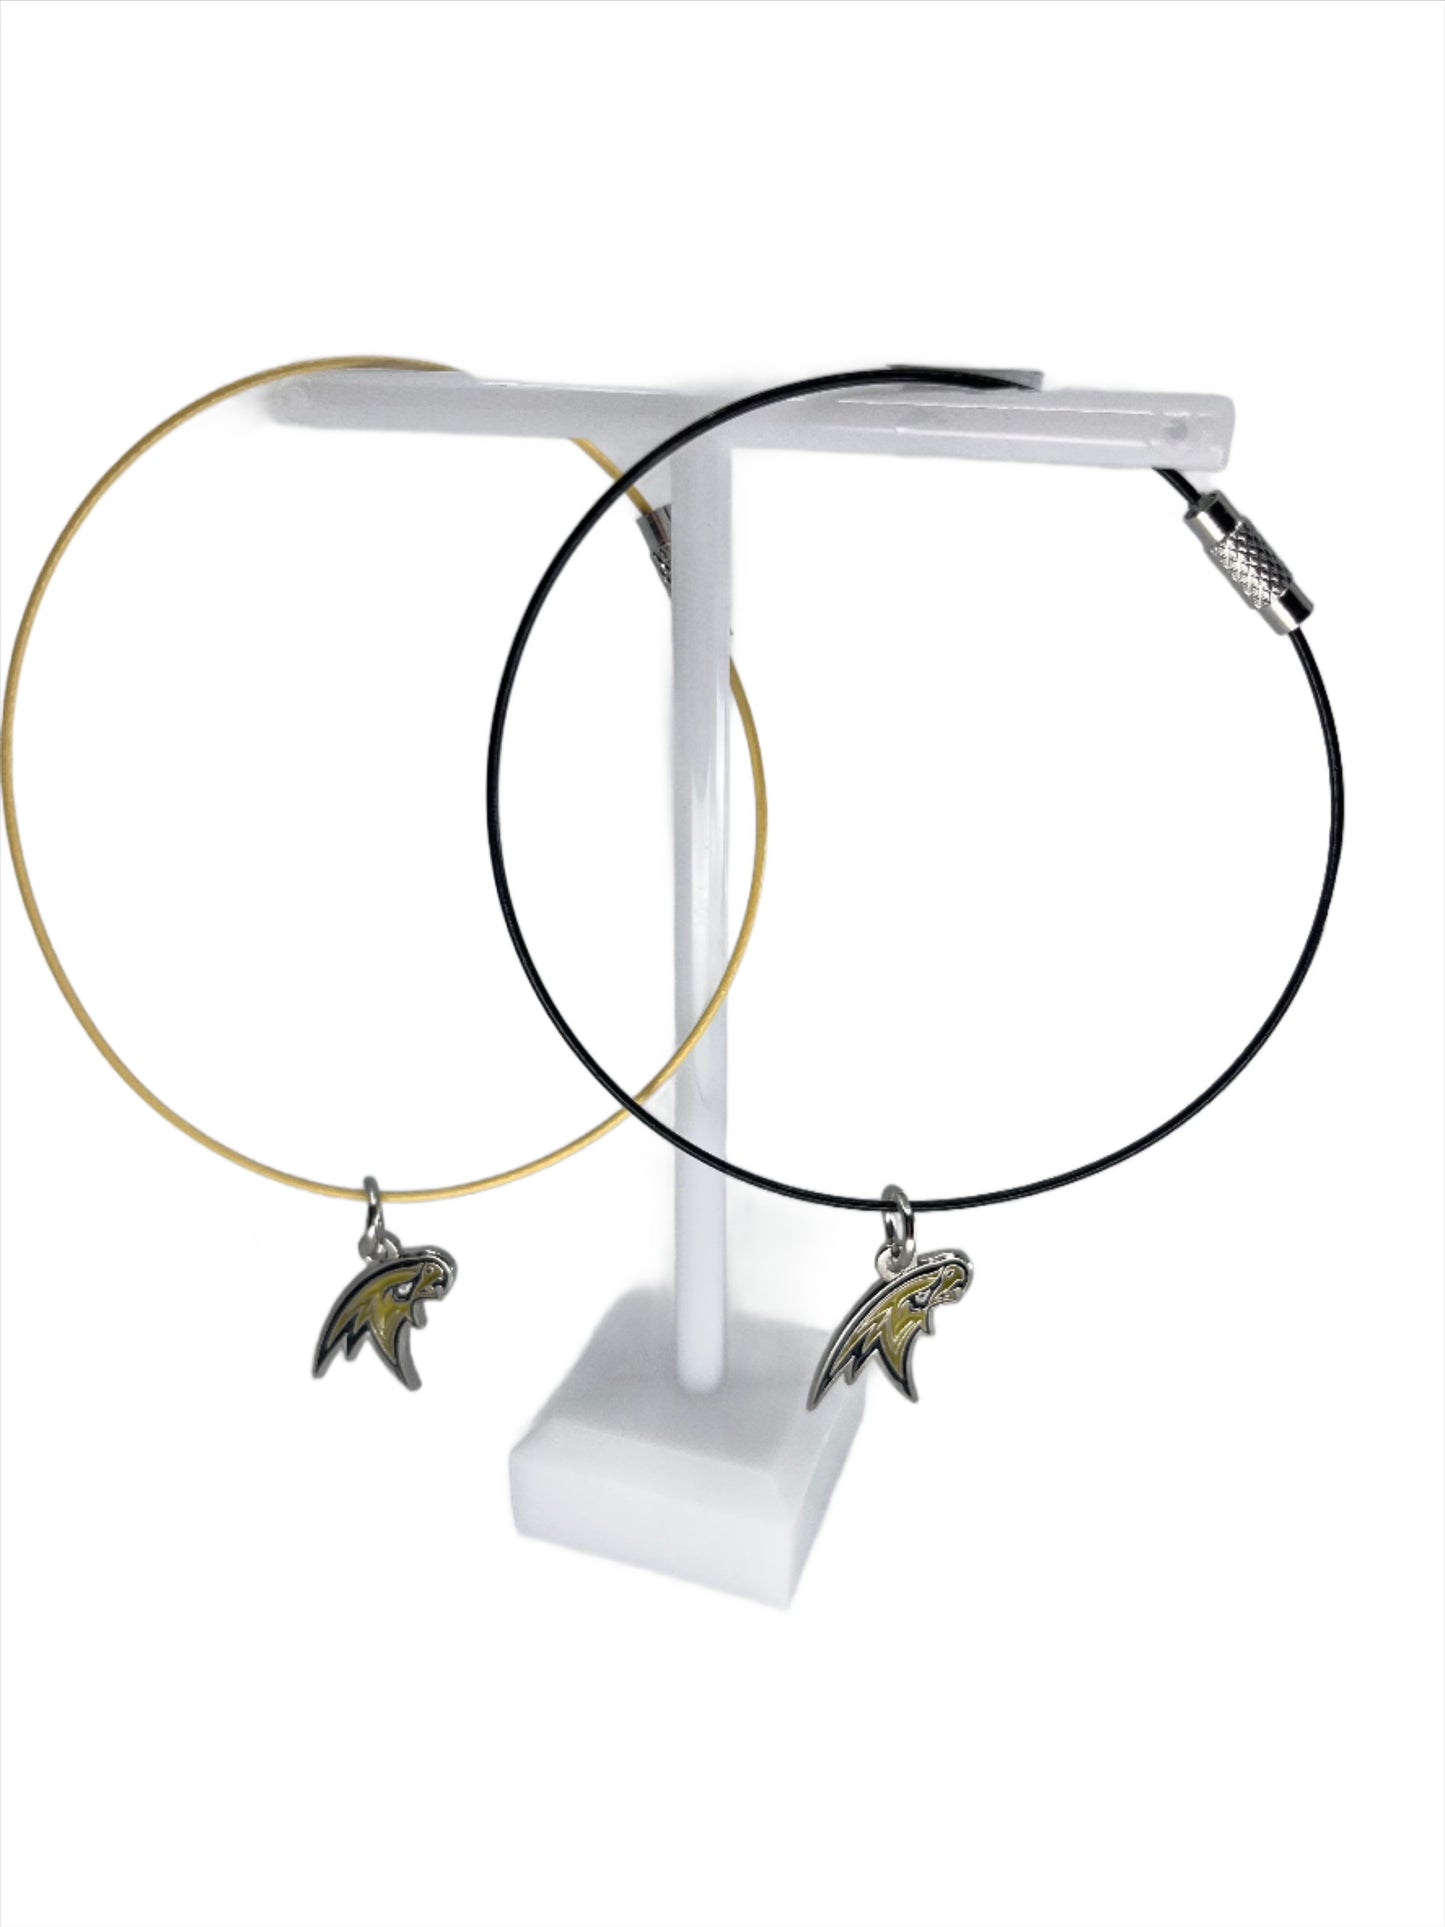 Corning Hawks Steel Wire Bracelet or Anklet